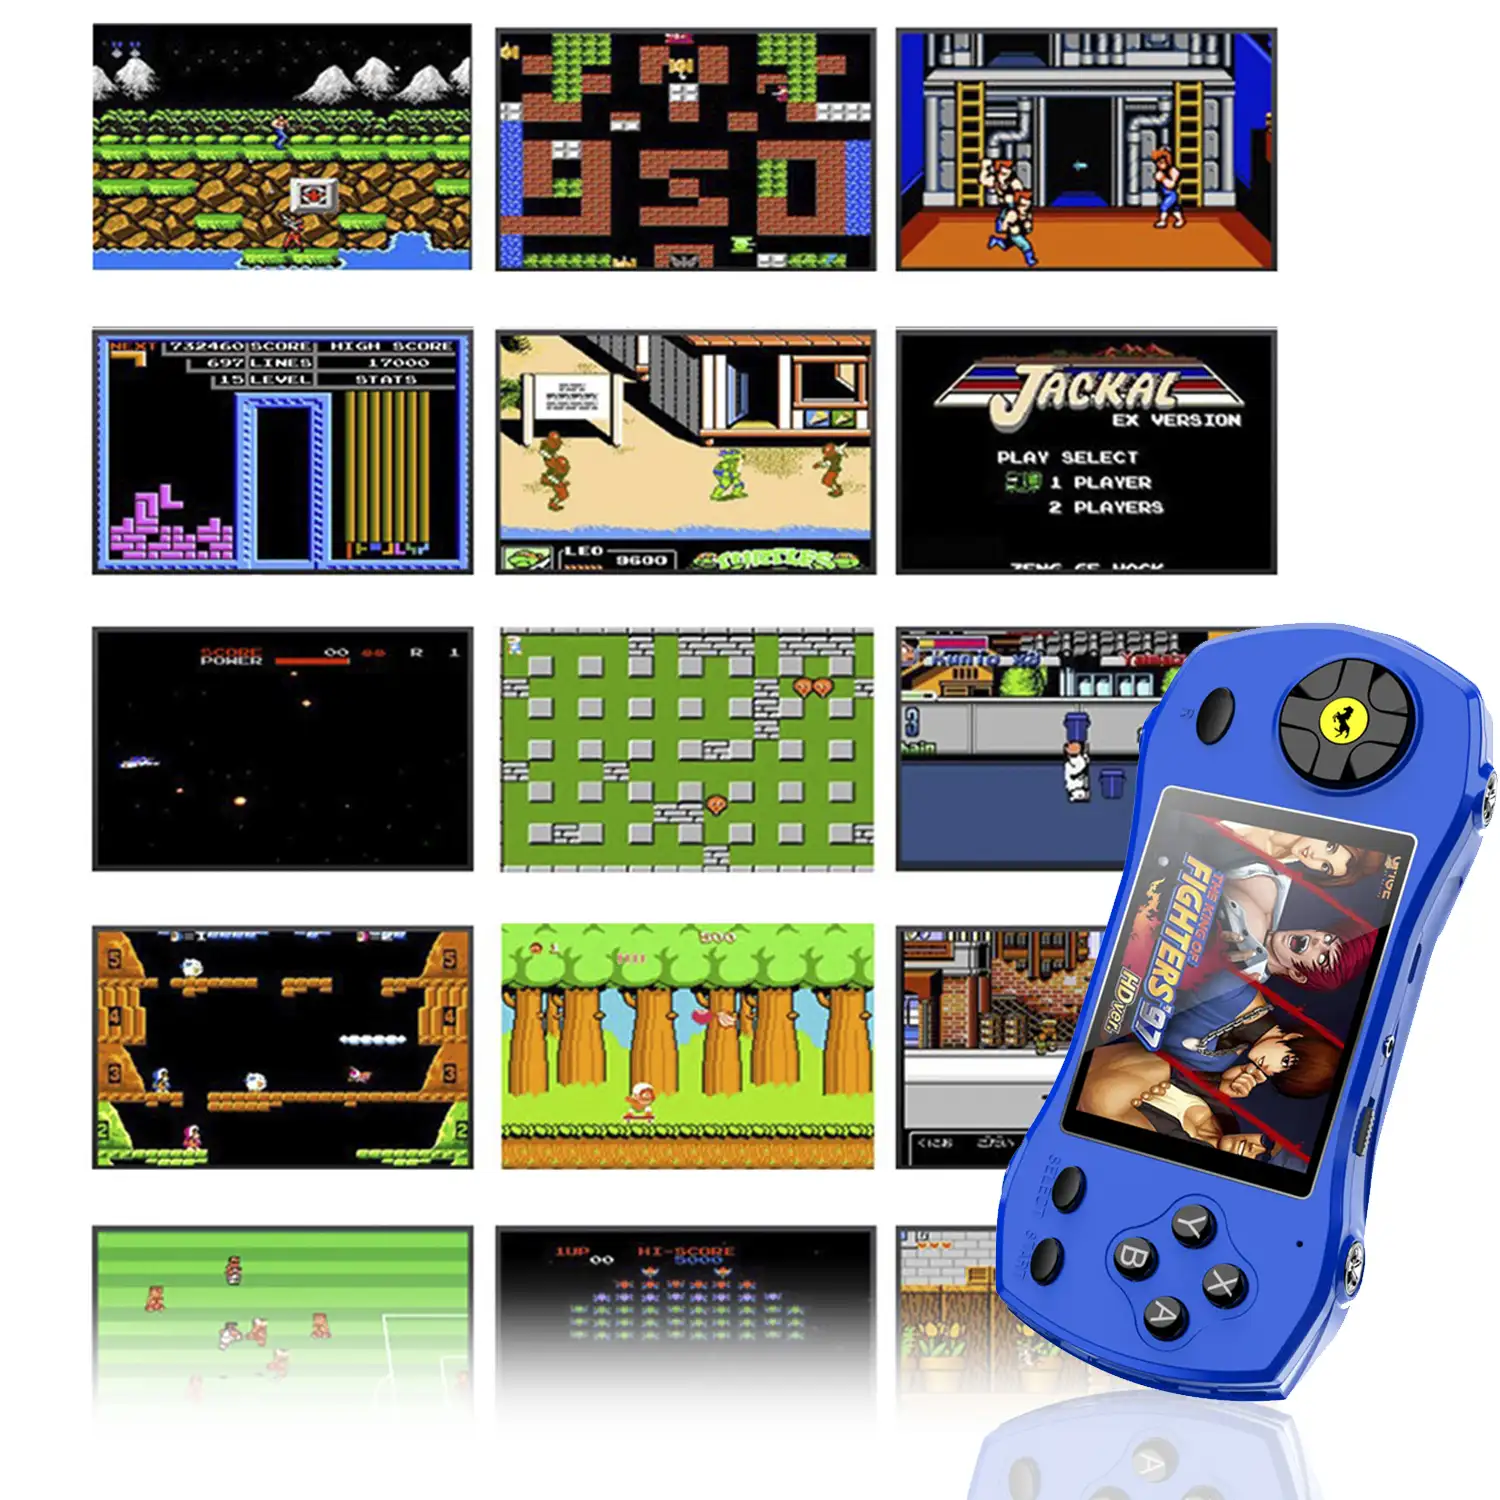 Consola de videojuegos F1 forma de coche, con pantalla de 2,8 y 620 juegos de 8 bits incluidos. Incluye mando para 2º jugador.